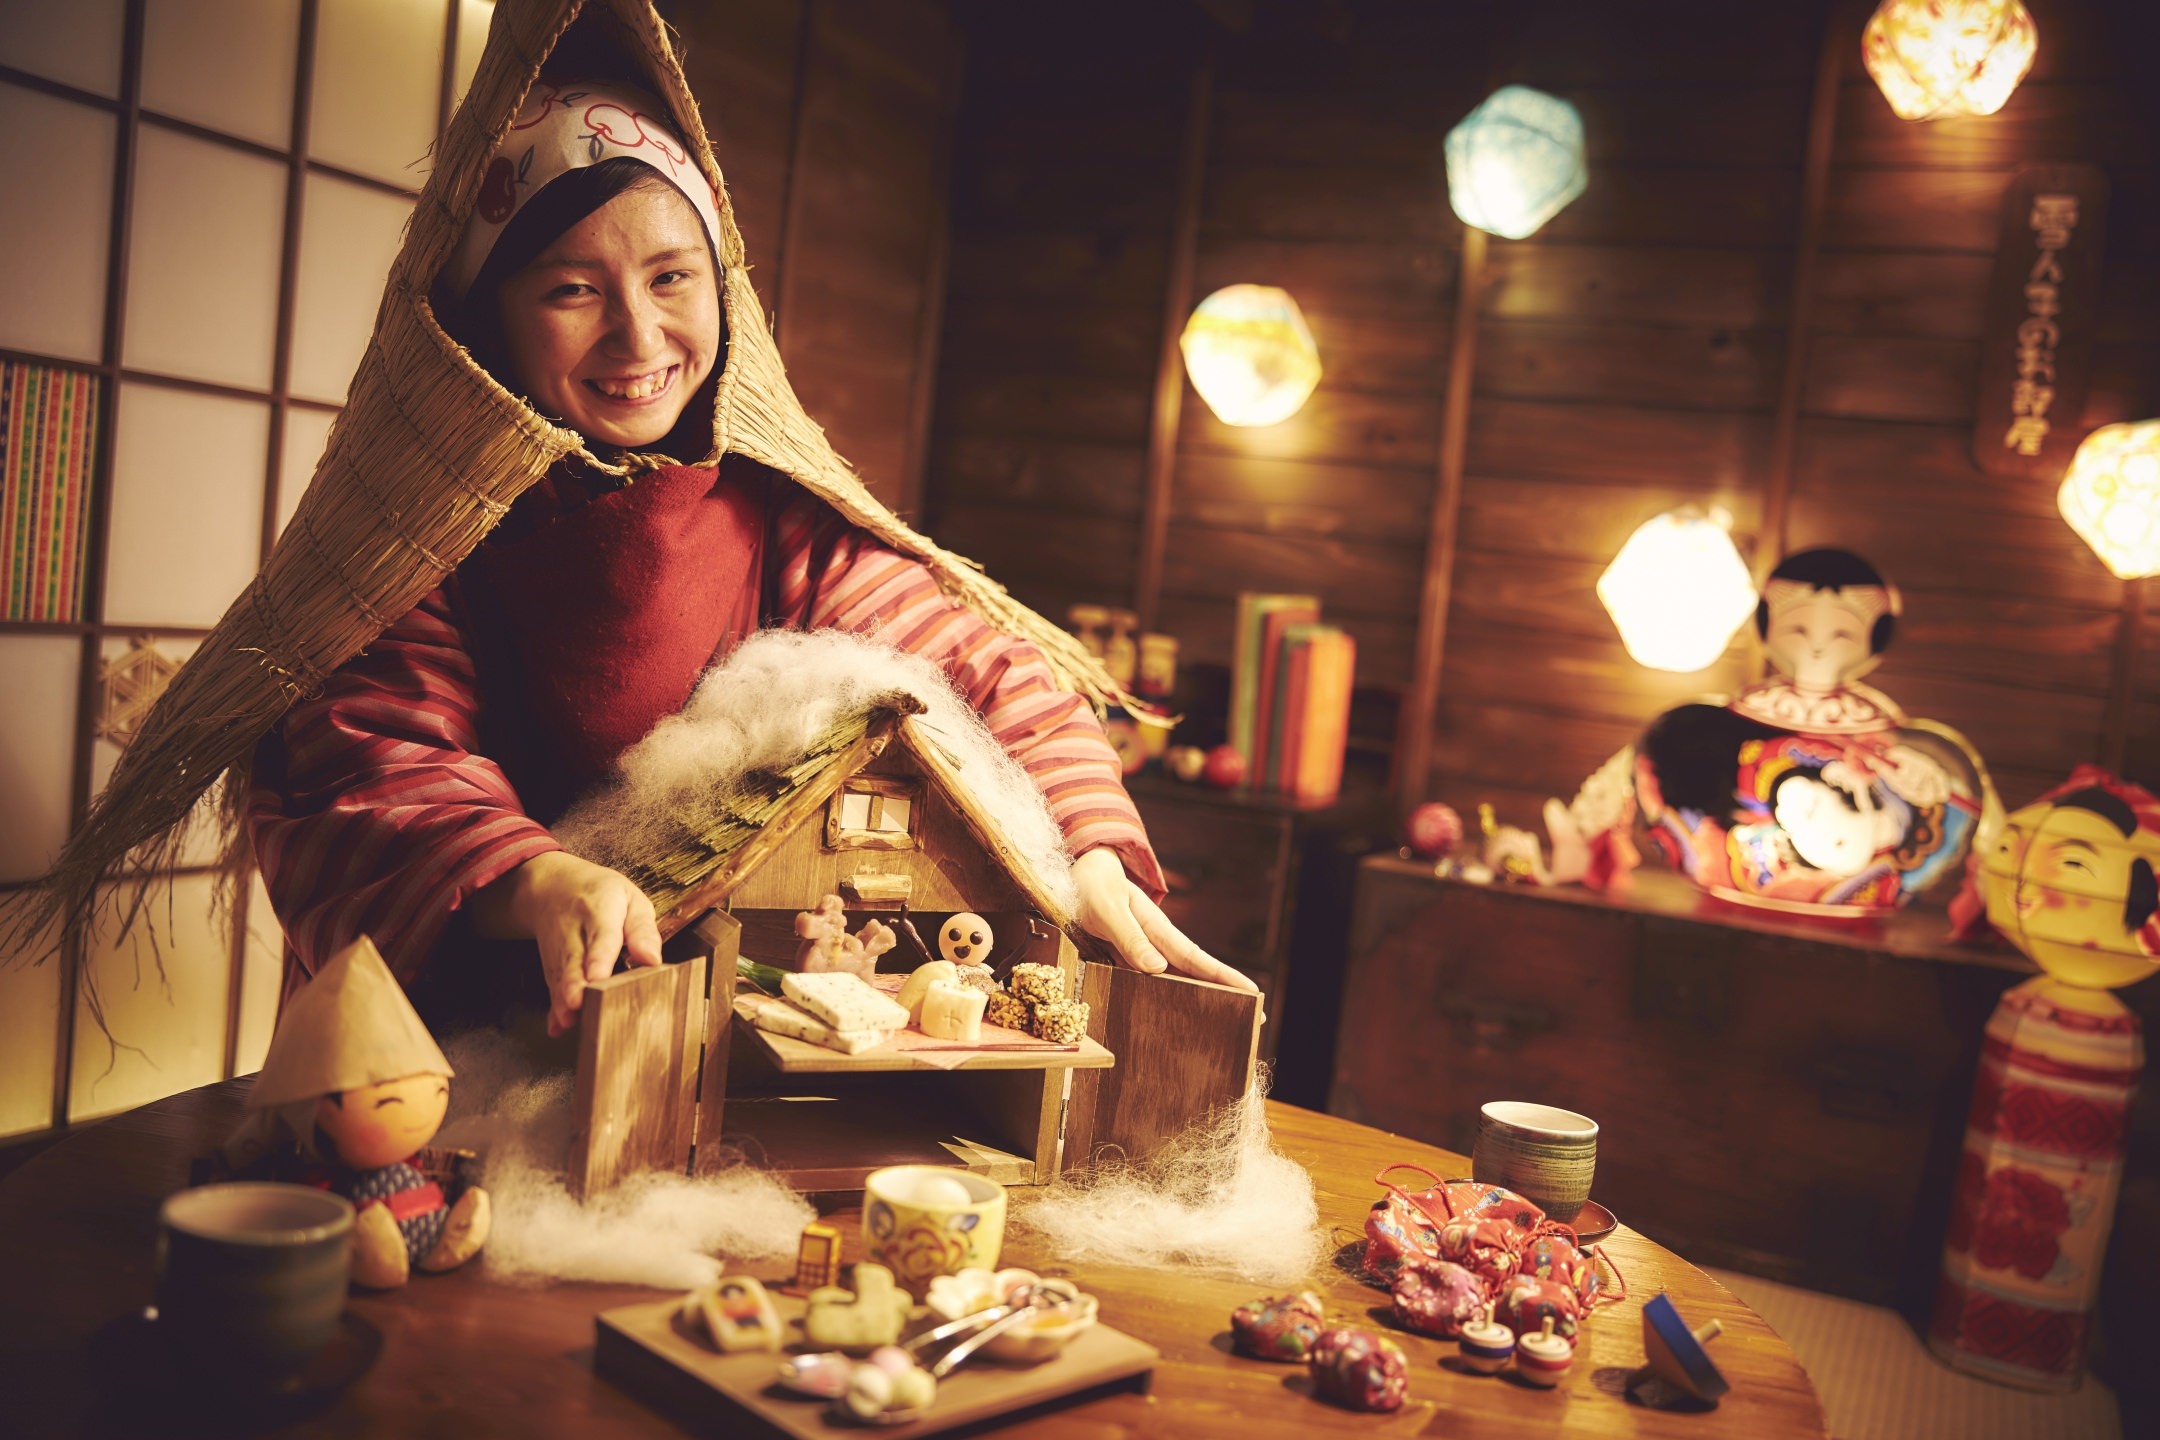 星野リゾート　トマム
「海鮮こぼれフェス」に「メガこぼれ寿司」が登場
スキー場で海鮮を贅沢に味わうイベント
期間：2019年12月1日～2020年3月31日